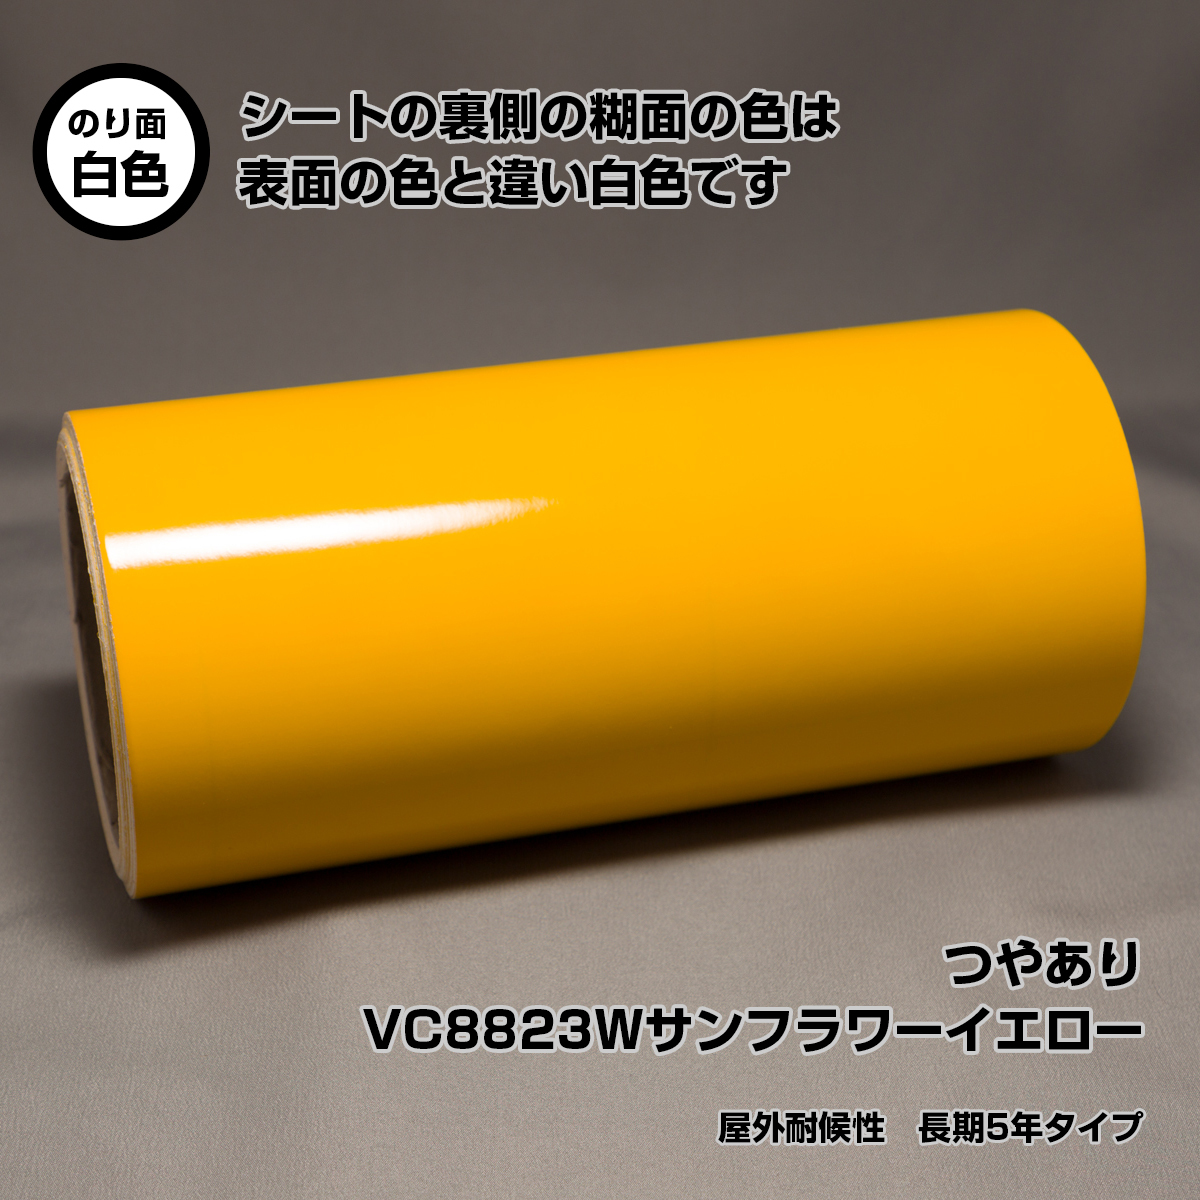 21cm×10m VC8823W sunflower yellow наружный атмосферостойкий долгое время 5 год модель маркировка сиденье разрезной плёнка стерео ka craft Robot камея 